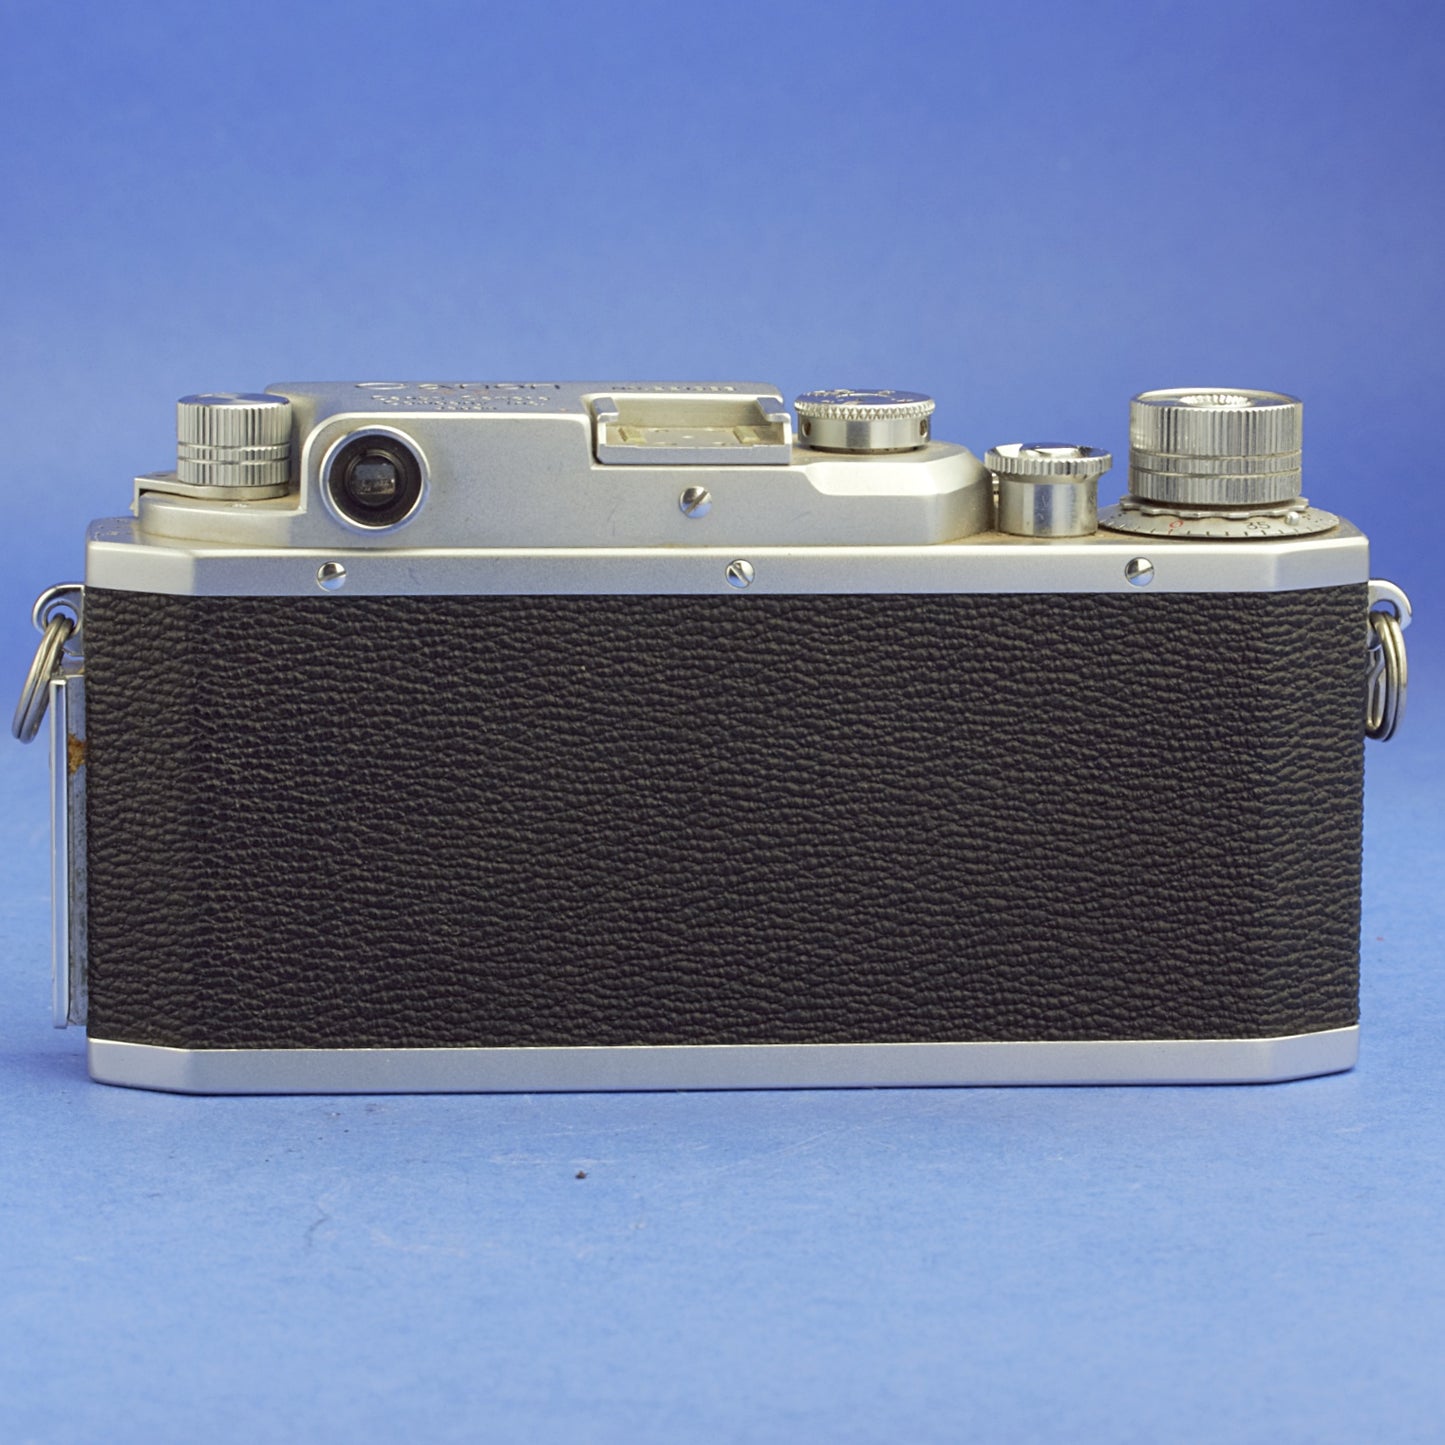 Canon IIS2 Film Camera Body